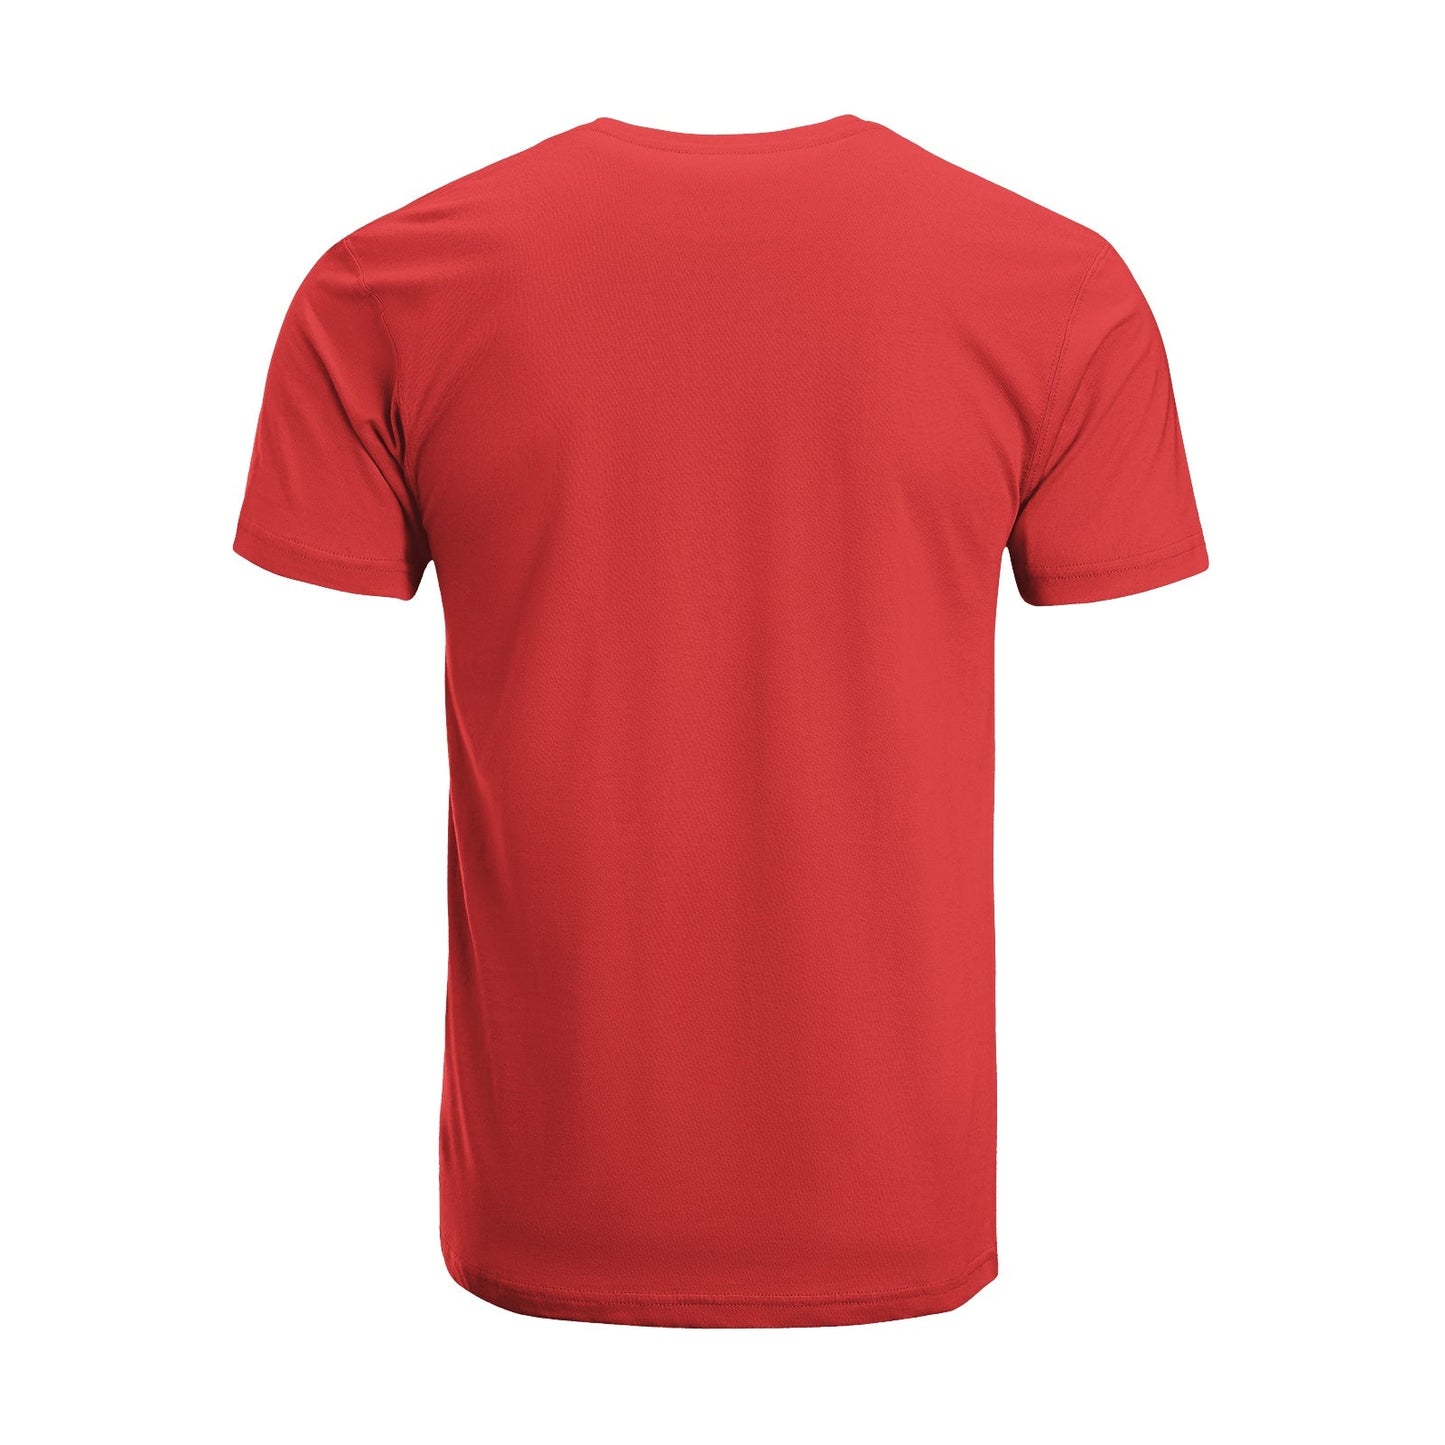 Unisex Short Sleeve Crew Neck Cotton Jersey T-Shirt TRUCK 43